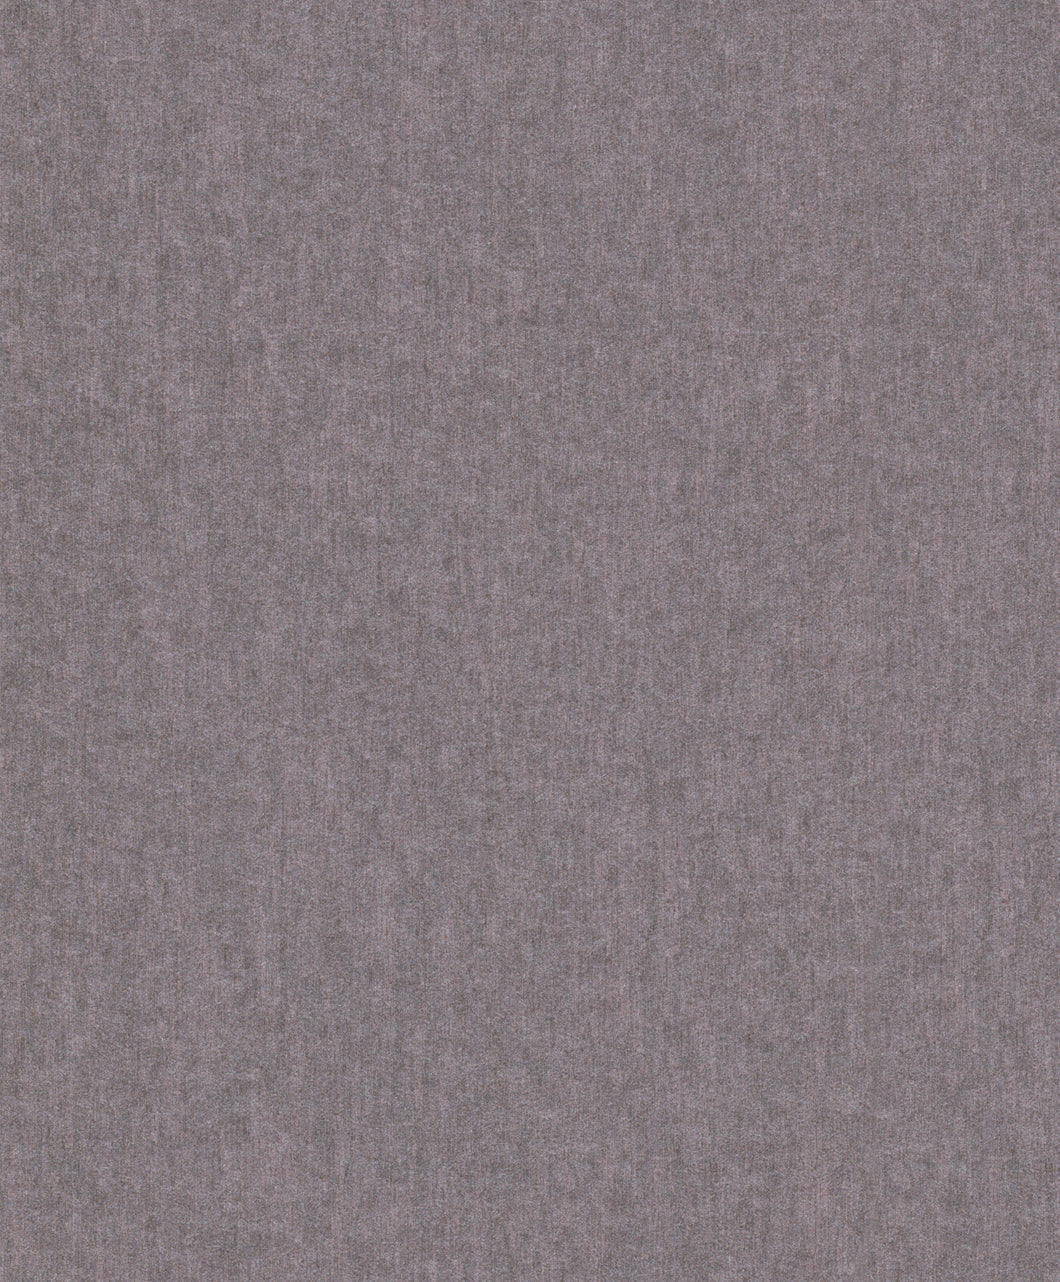 Dark Grey Minimalist Wallpaper R4023 | Modern Home Interior